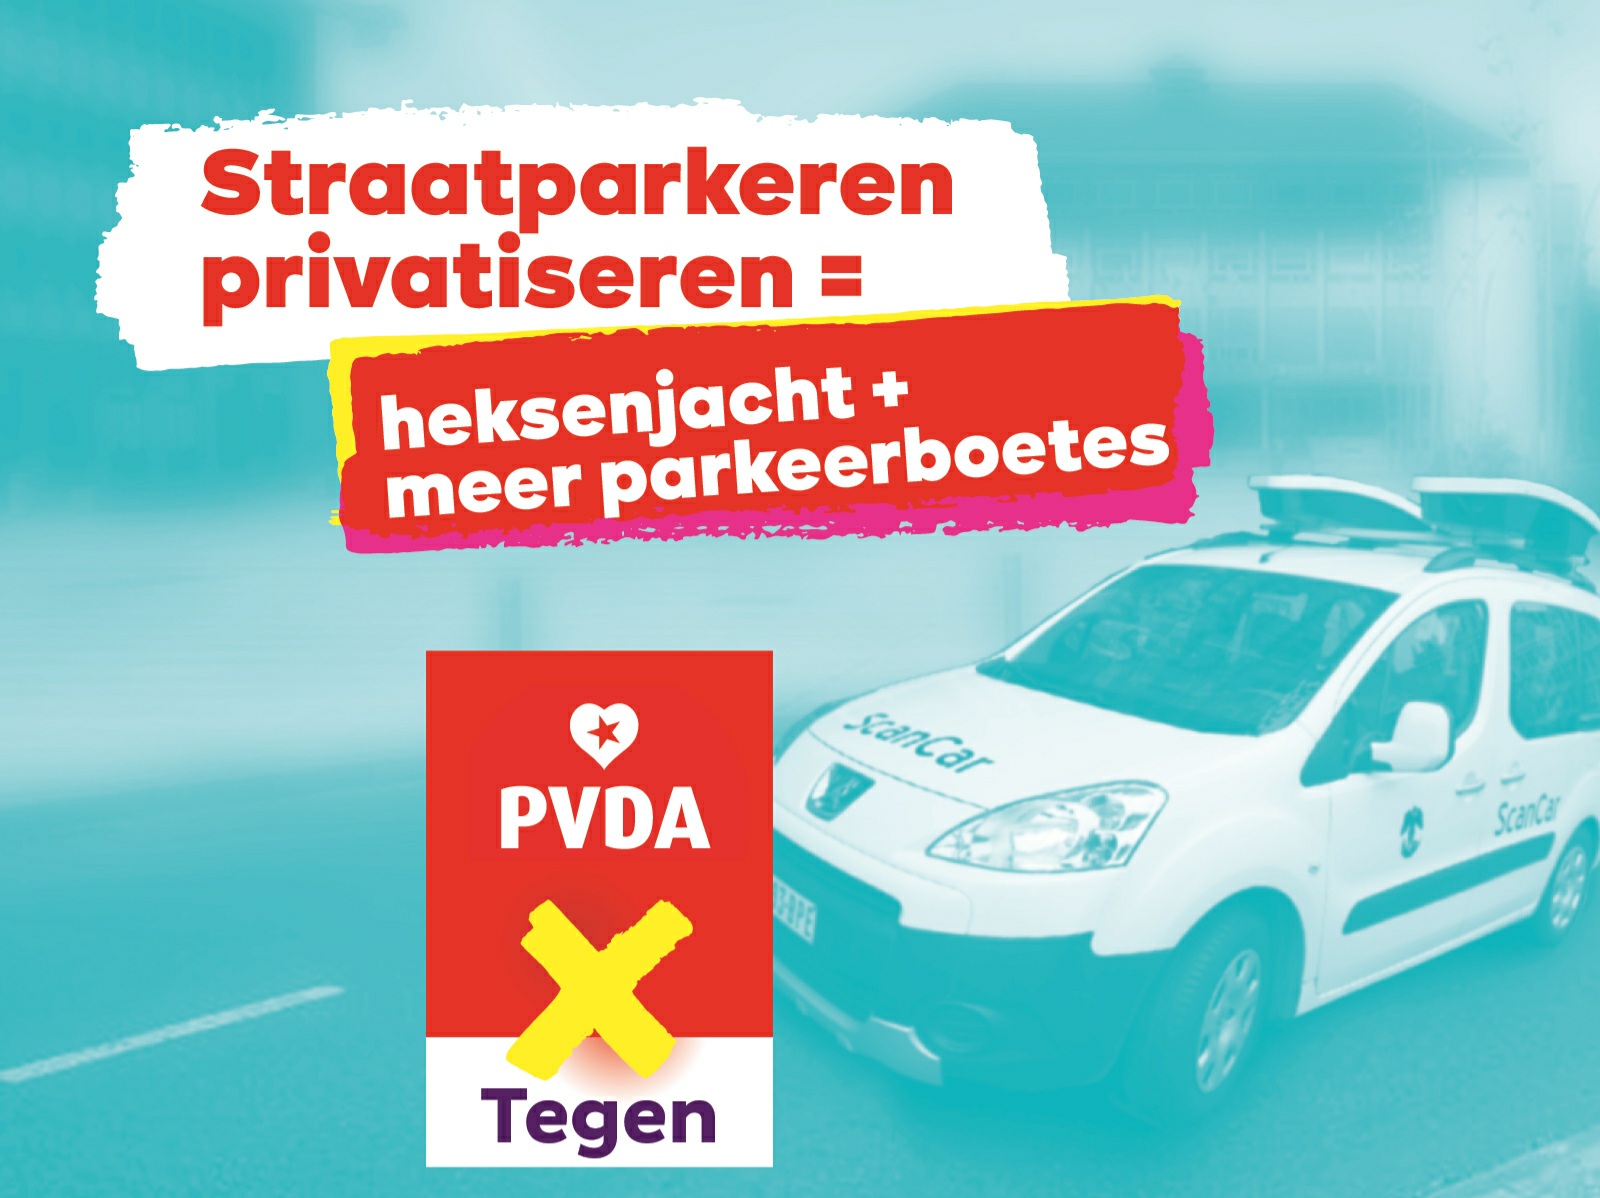 Straatparkeren privatiseren = heksenjacht + meer parkeerboetes, PVDA is tegen